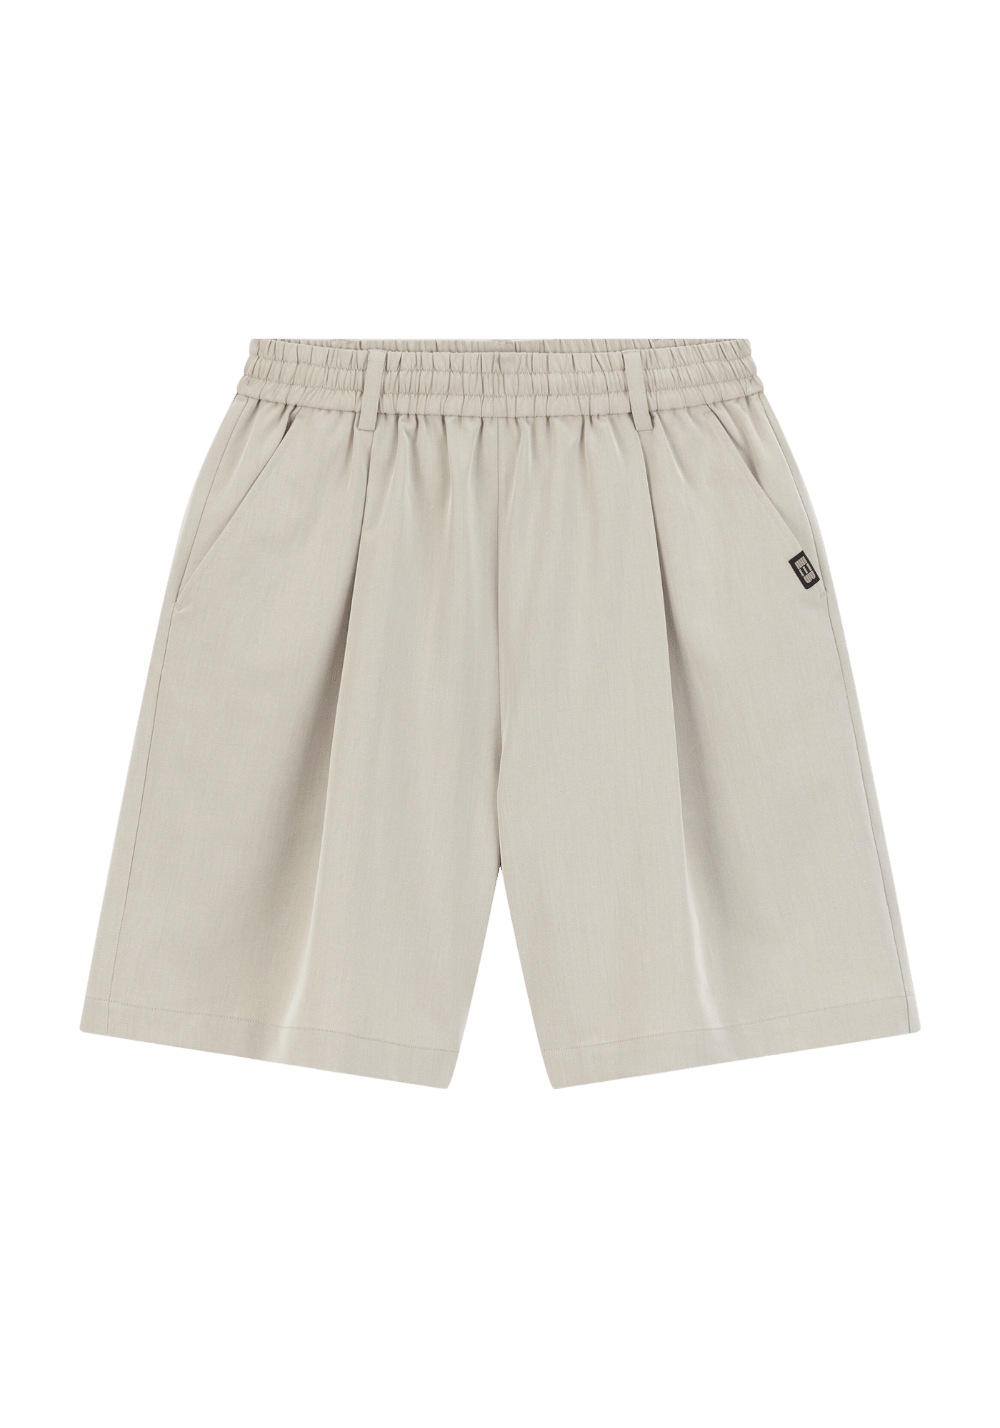 Elastic Waist Single Pleat Shorts - PSYLOS 1, Elastic Waist Single Pleat Shorts, Shorts, Boneless, PSYLOS 1